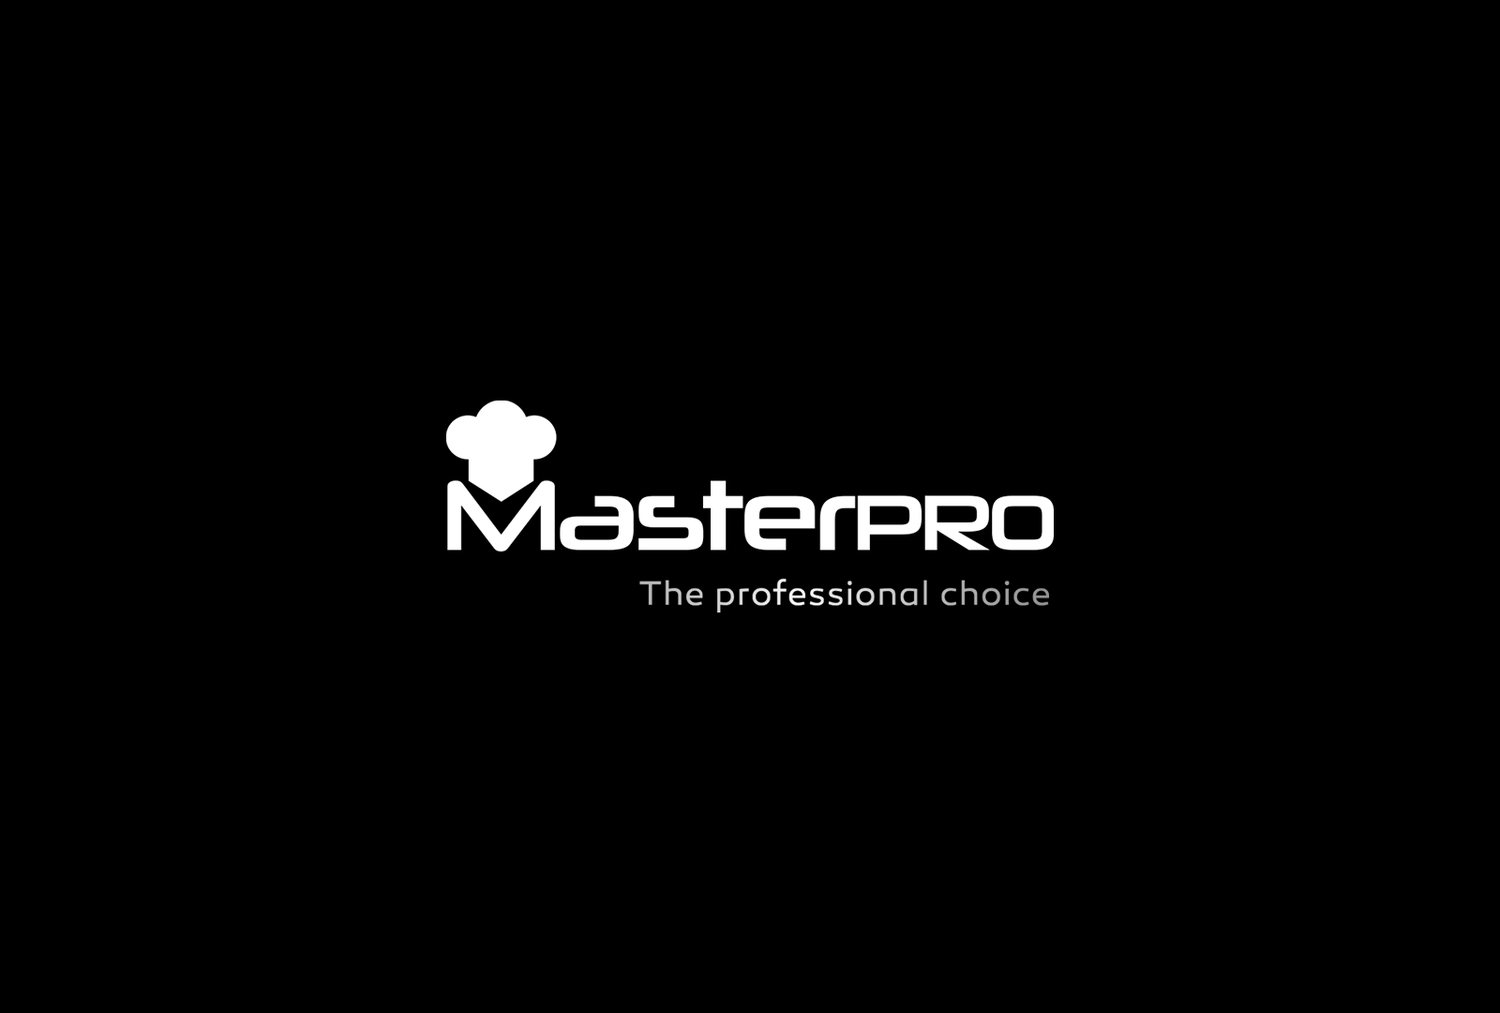 MasterPRO logomark with slogan